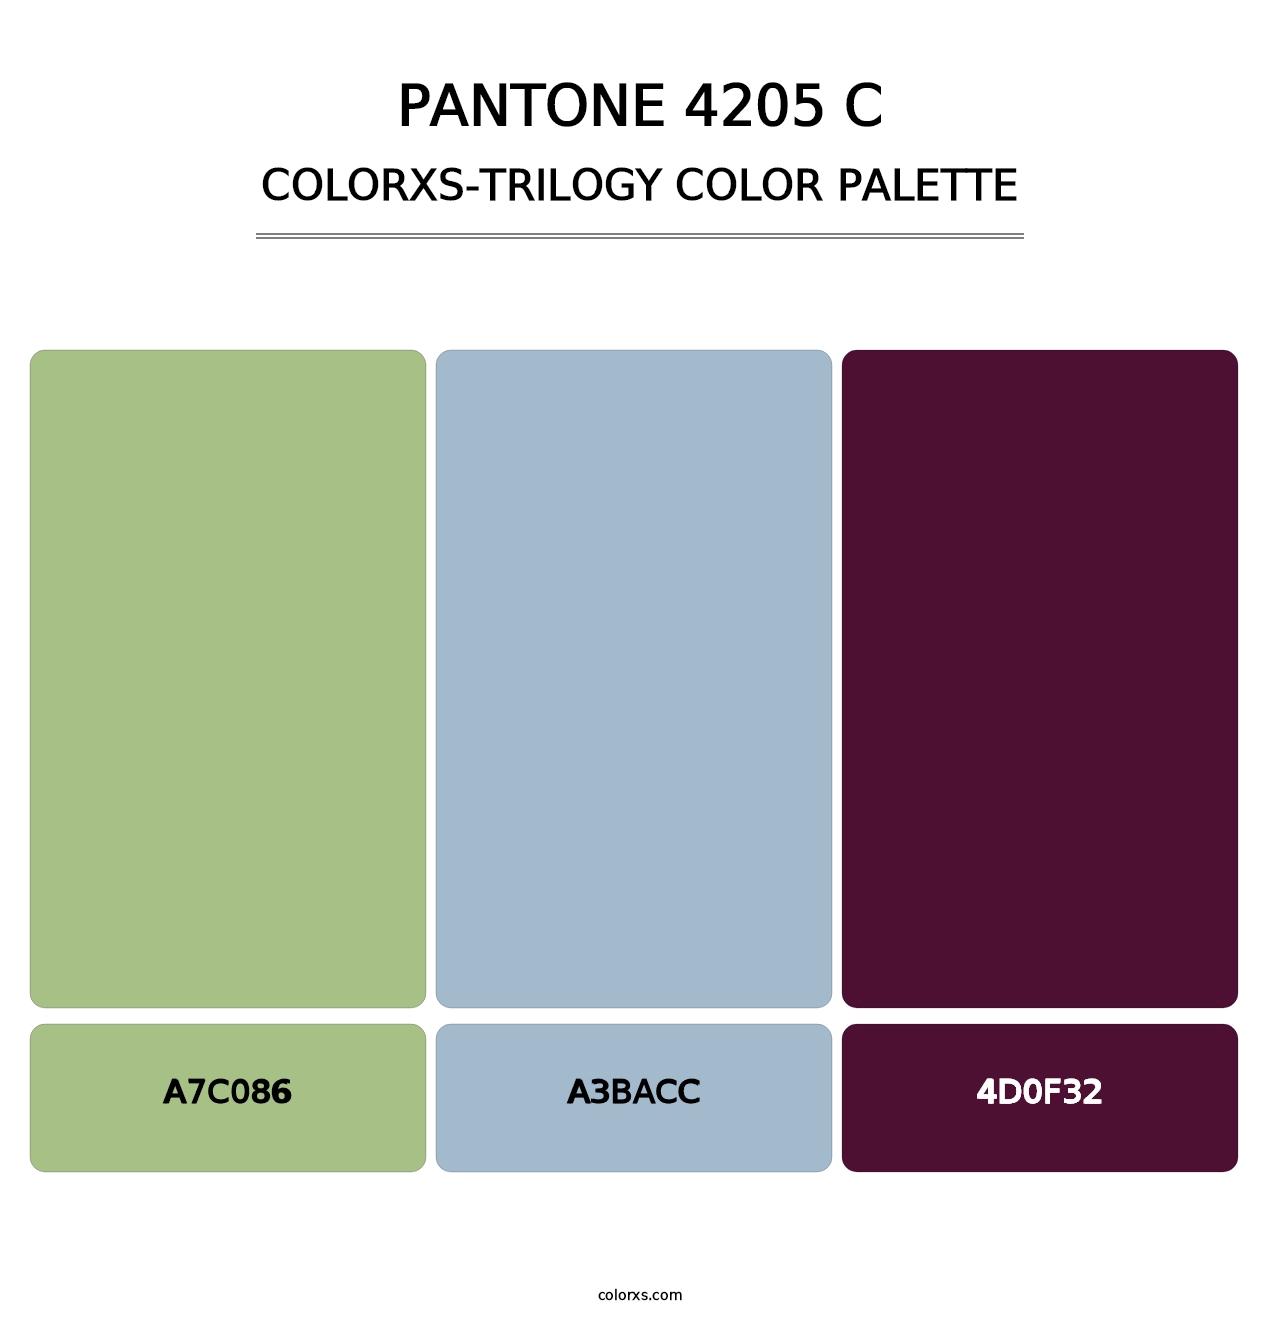 PANTONE 4205 C - Colorxs Trilogy Palette